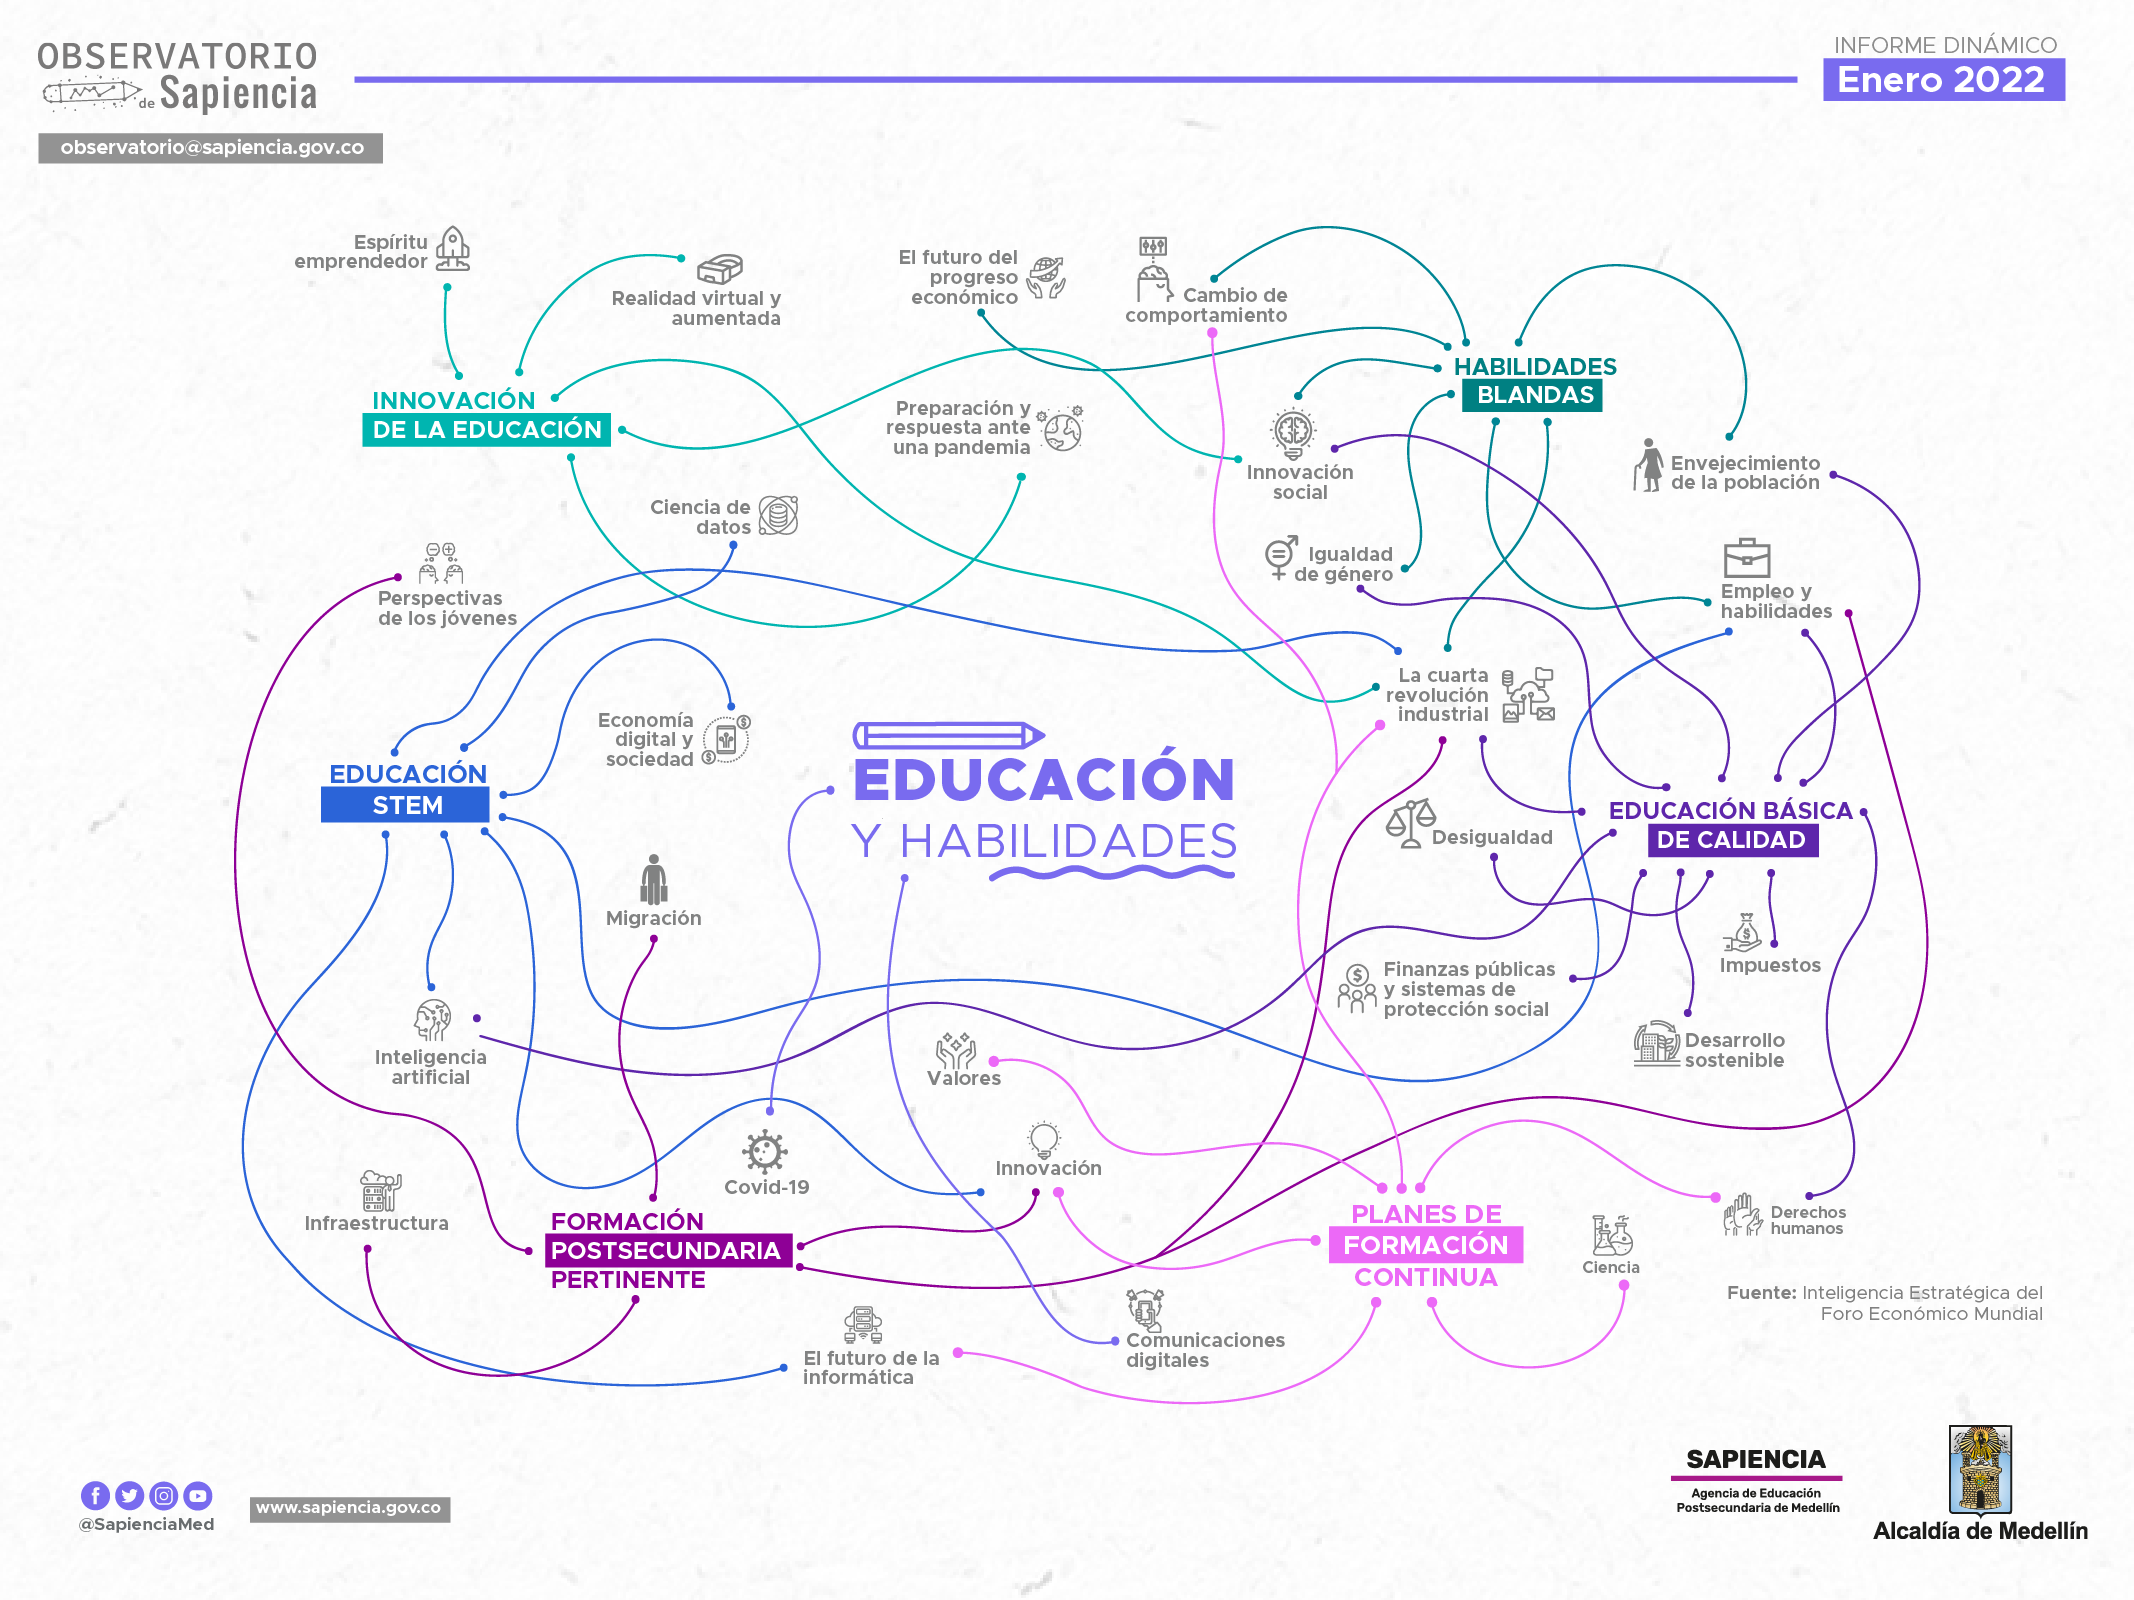 Imagen Informe dinámico sobre educación y habilidades, enero 2022